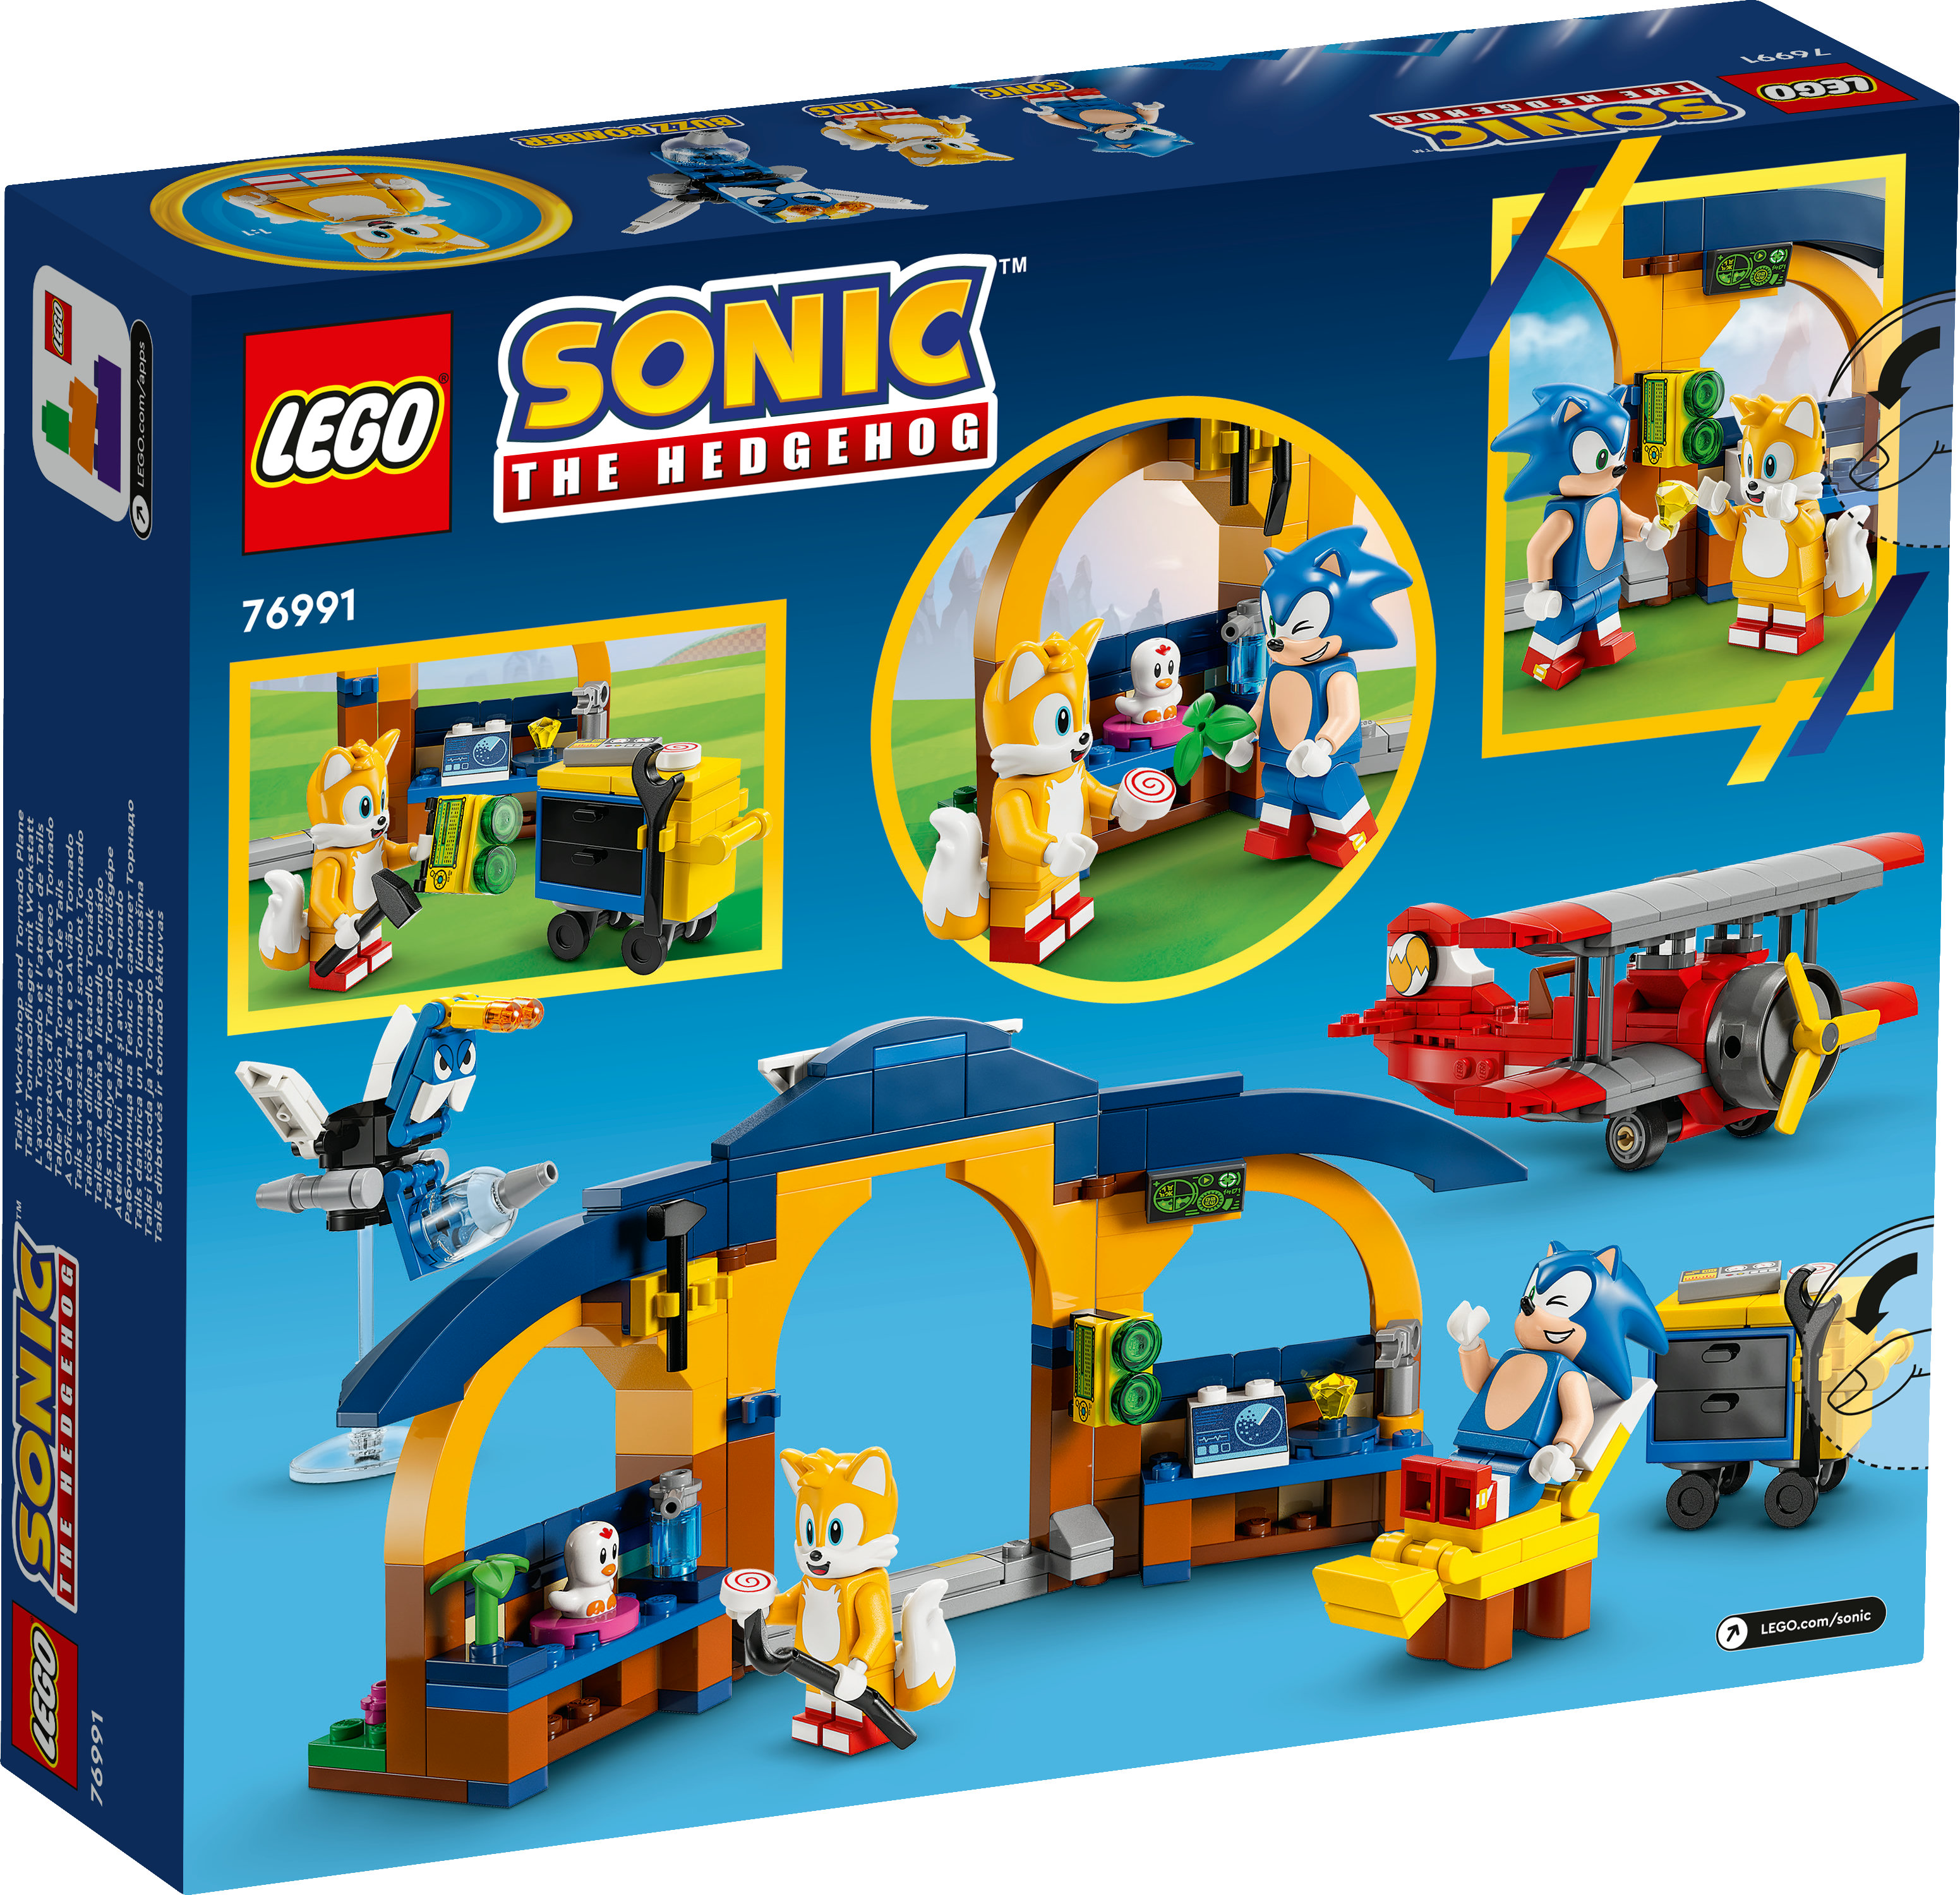 LEGO Sonic the Hedgehog 76991 Tails Tornadoflieger mit Werkstatt